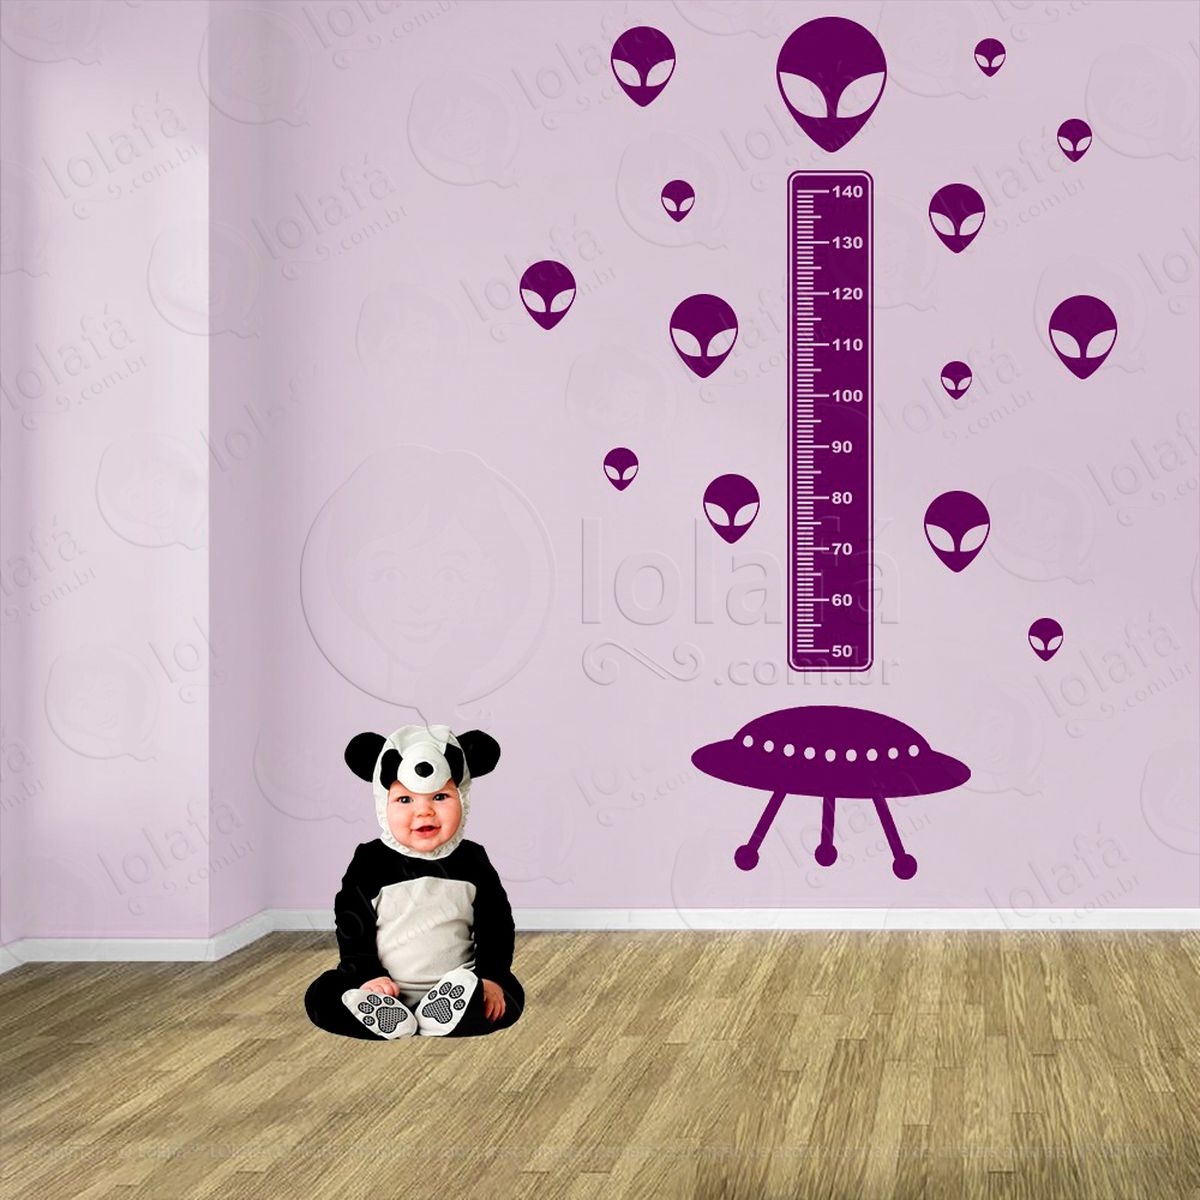 nave espacial e aliens adesivo régua de crescimento infantil, medidor de altura para quarto, porta e parede - mod:1284